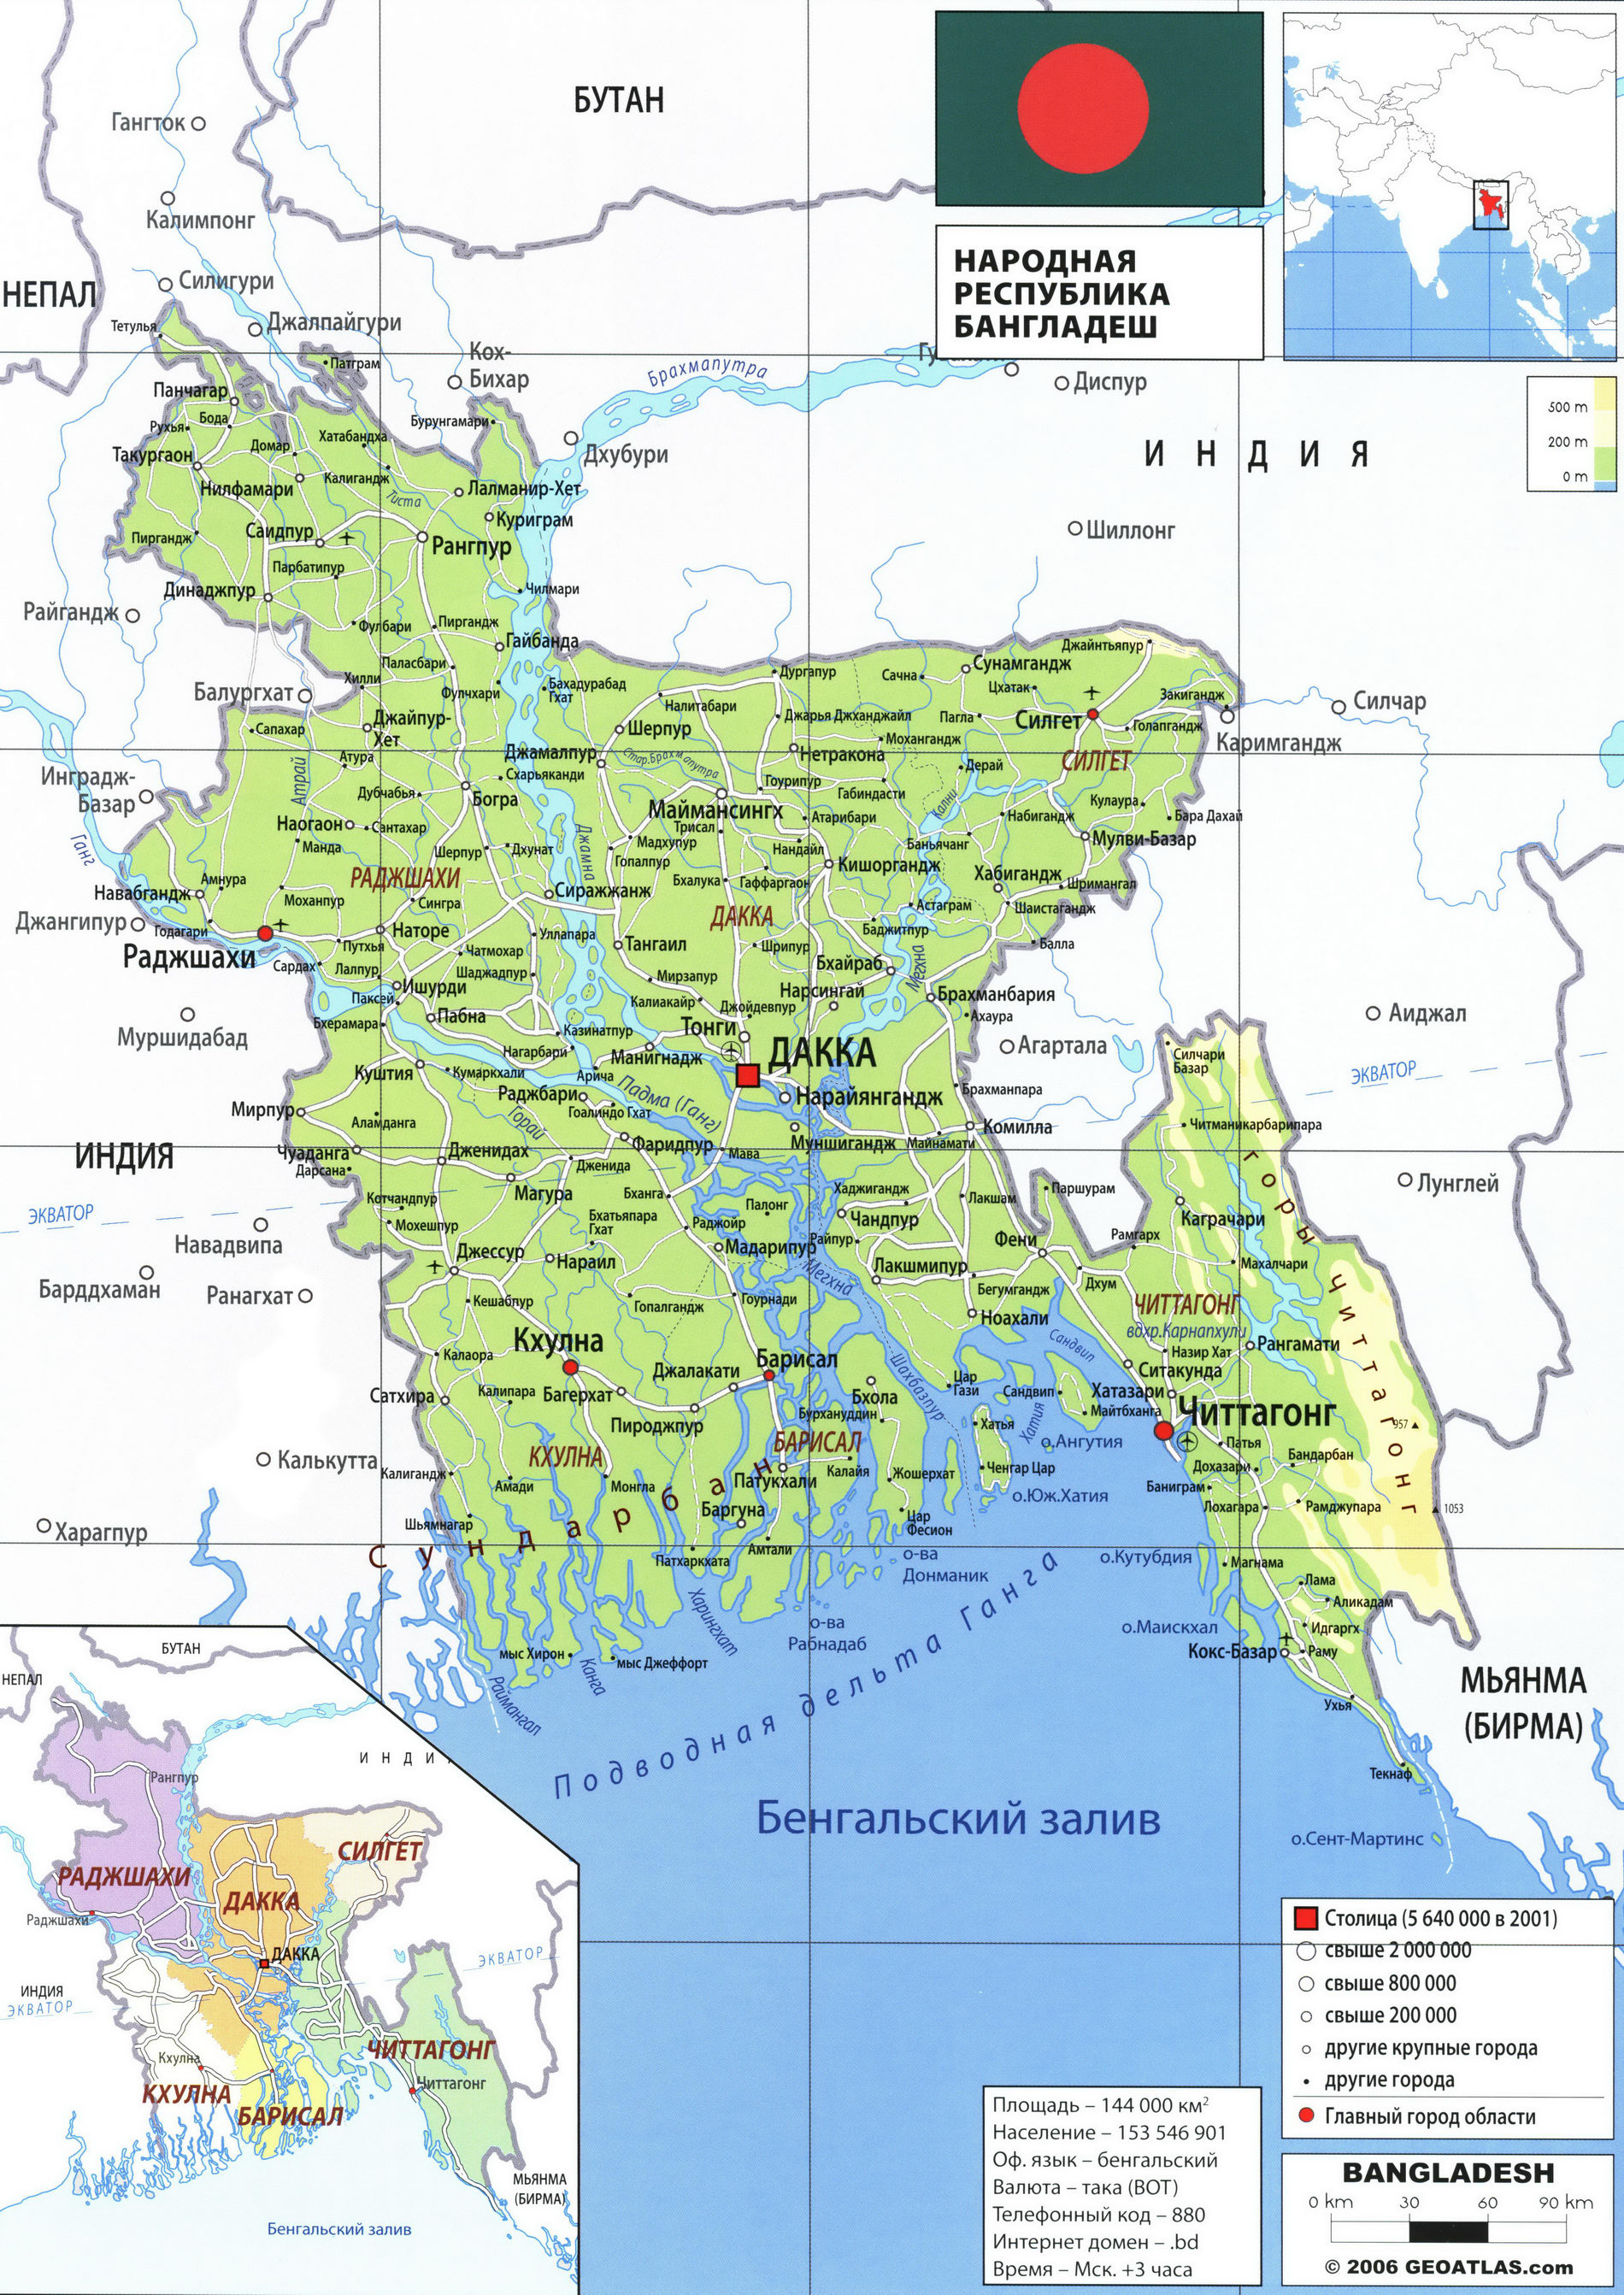 Бангладеш карта на русском языке